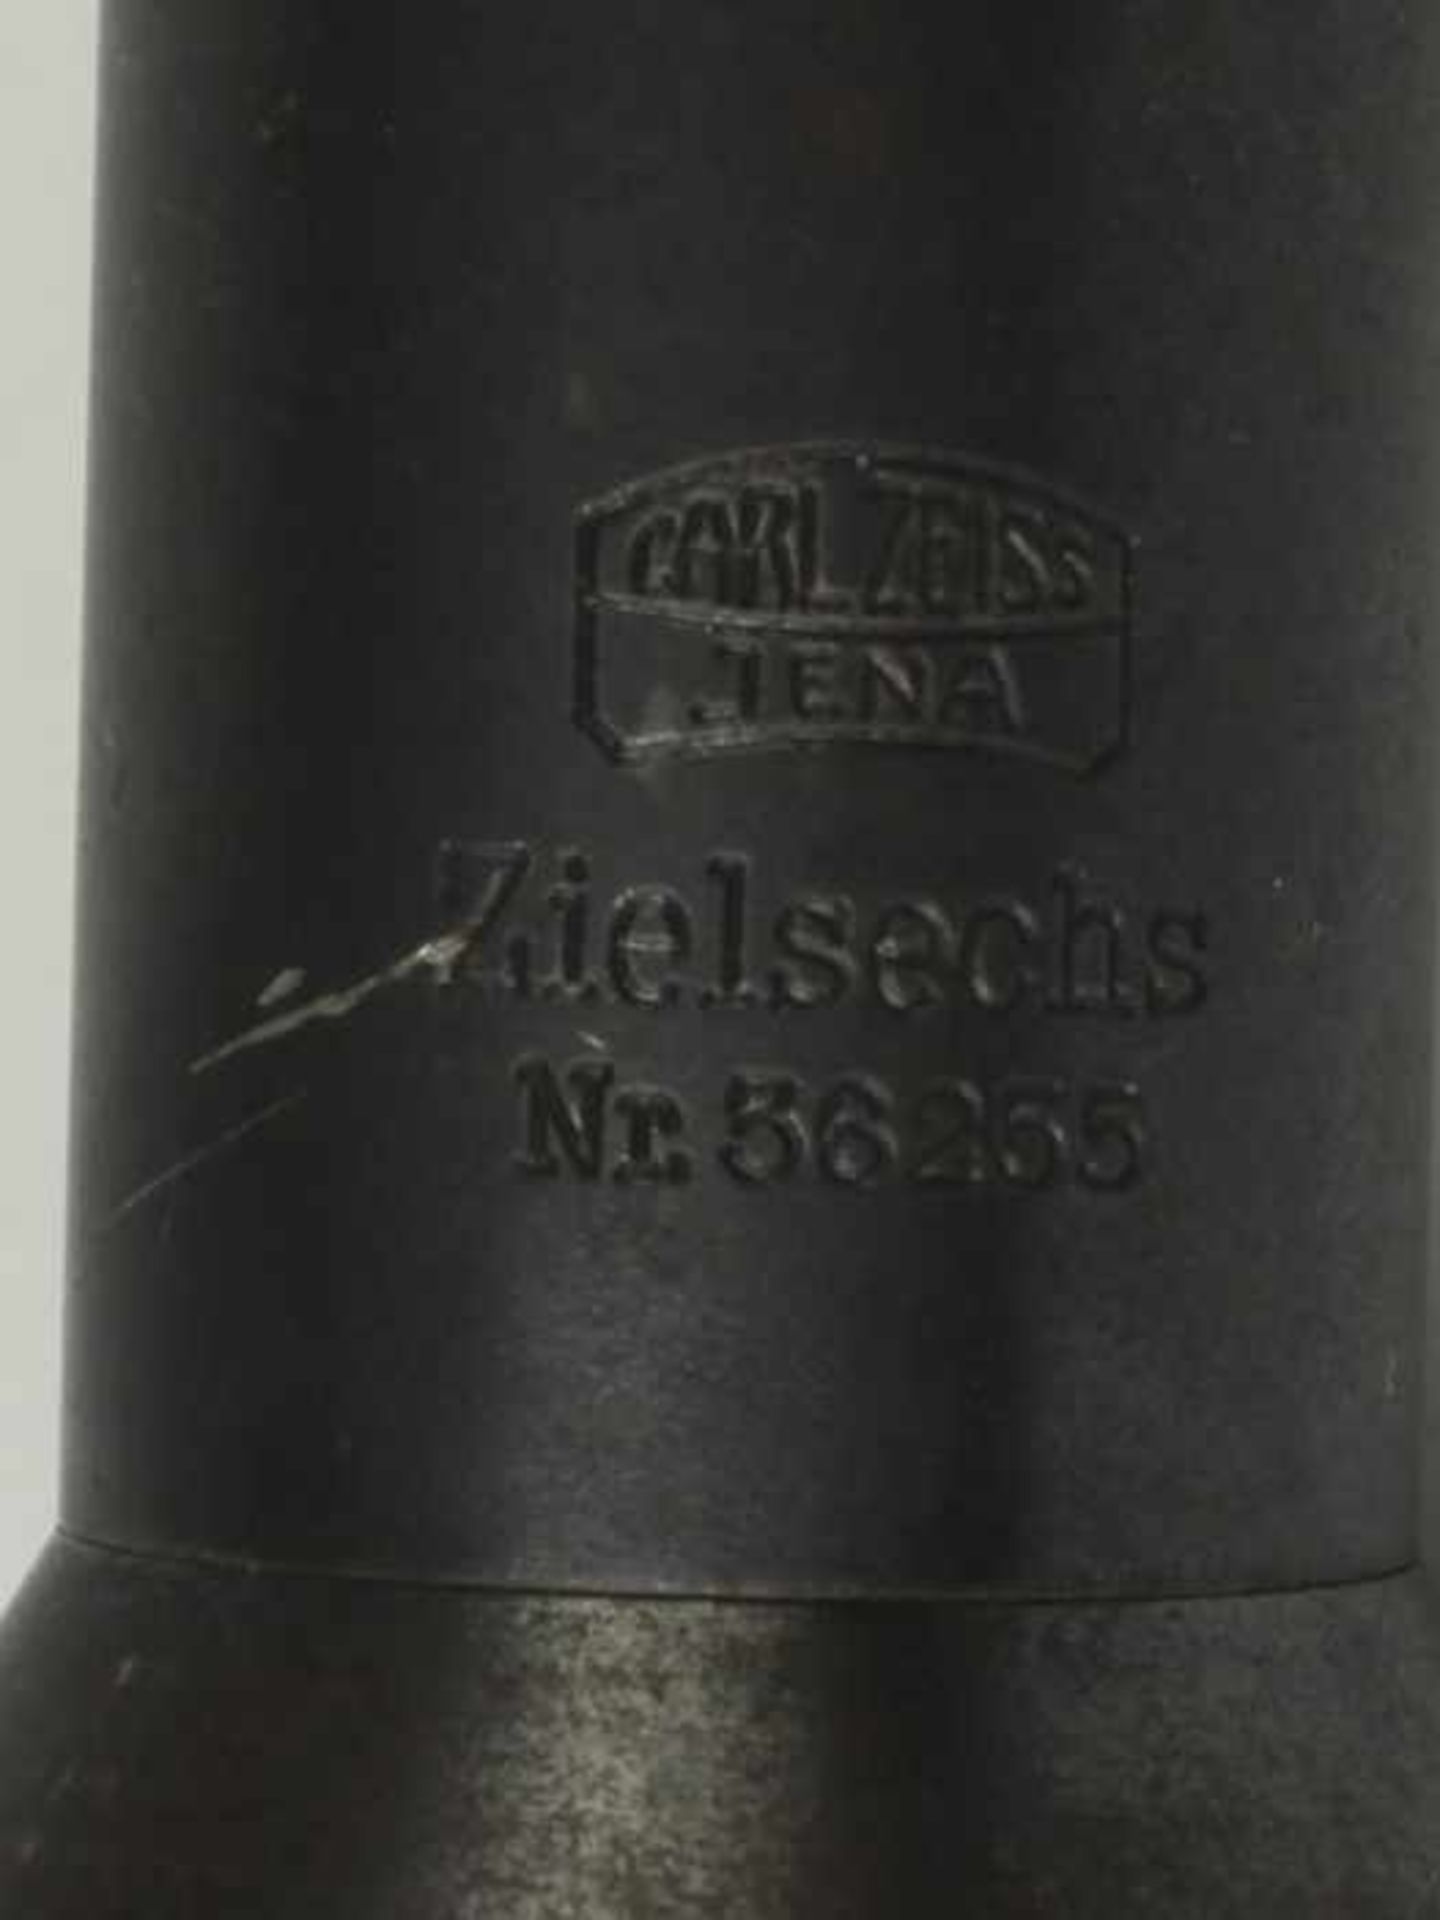 Zielfernrohr - ZeissCarl Zeiss Jena, Zielsechs, Nr. 36255, Metall-Tubus, grau lackiert, Objektiv, - Bild 3 aus 4